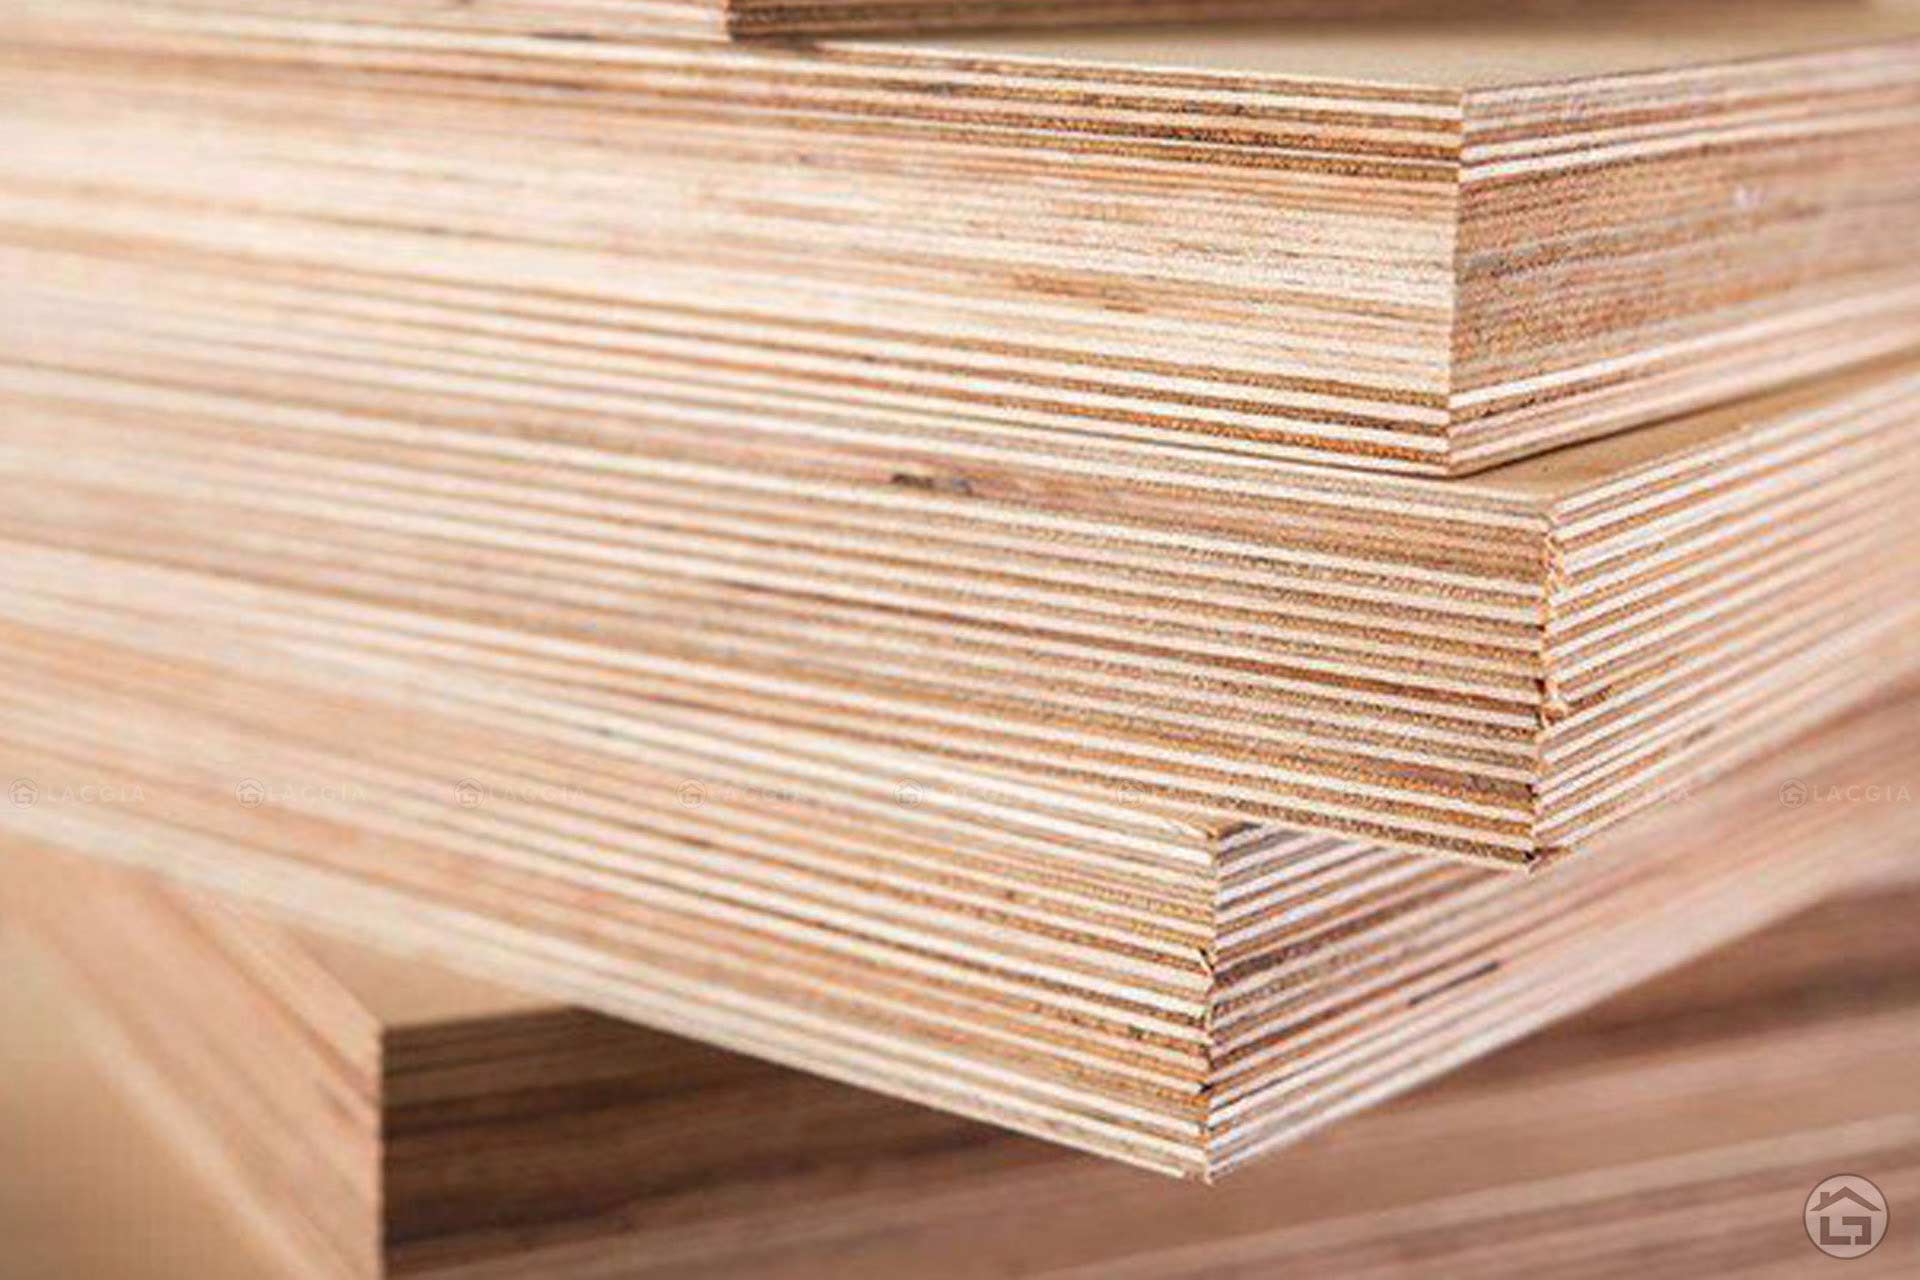 Gỗ Plywood là loại vật liệu được yêu thích trong sản xuất nội thất hiện nay